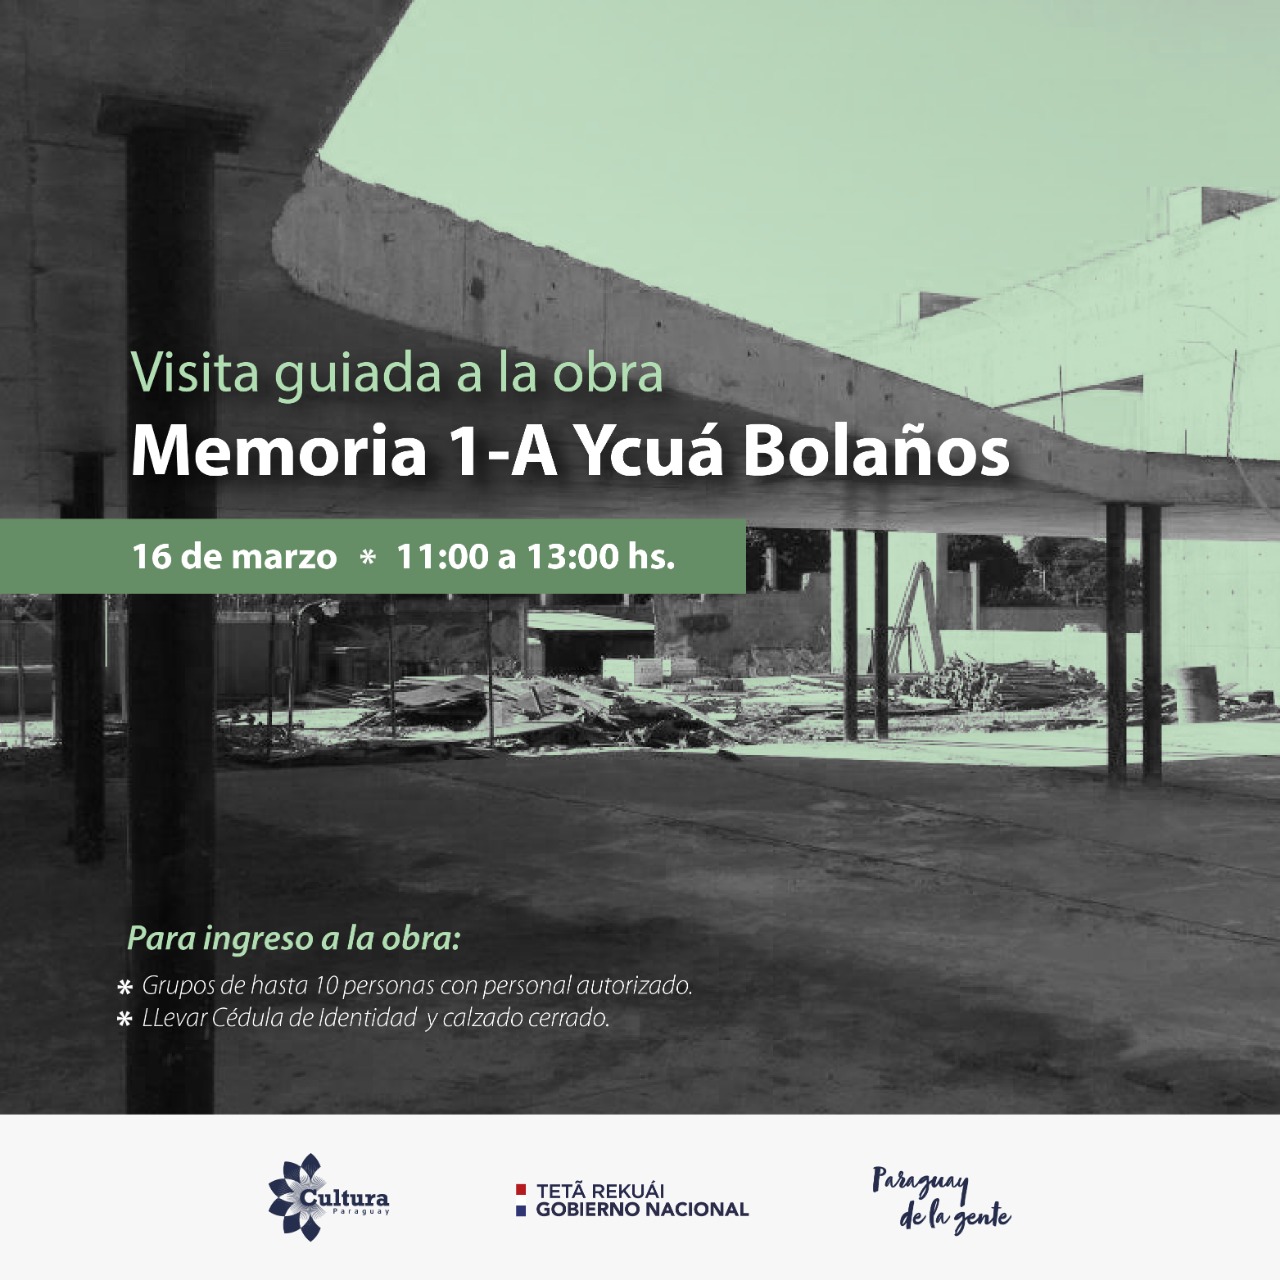 Visita guiada en el sitio de Memoria 1-A Ycuá Bolaños imagen